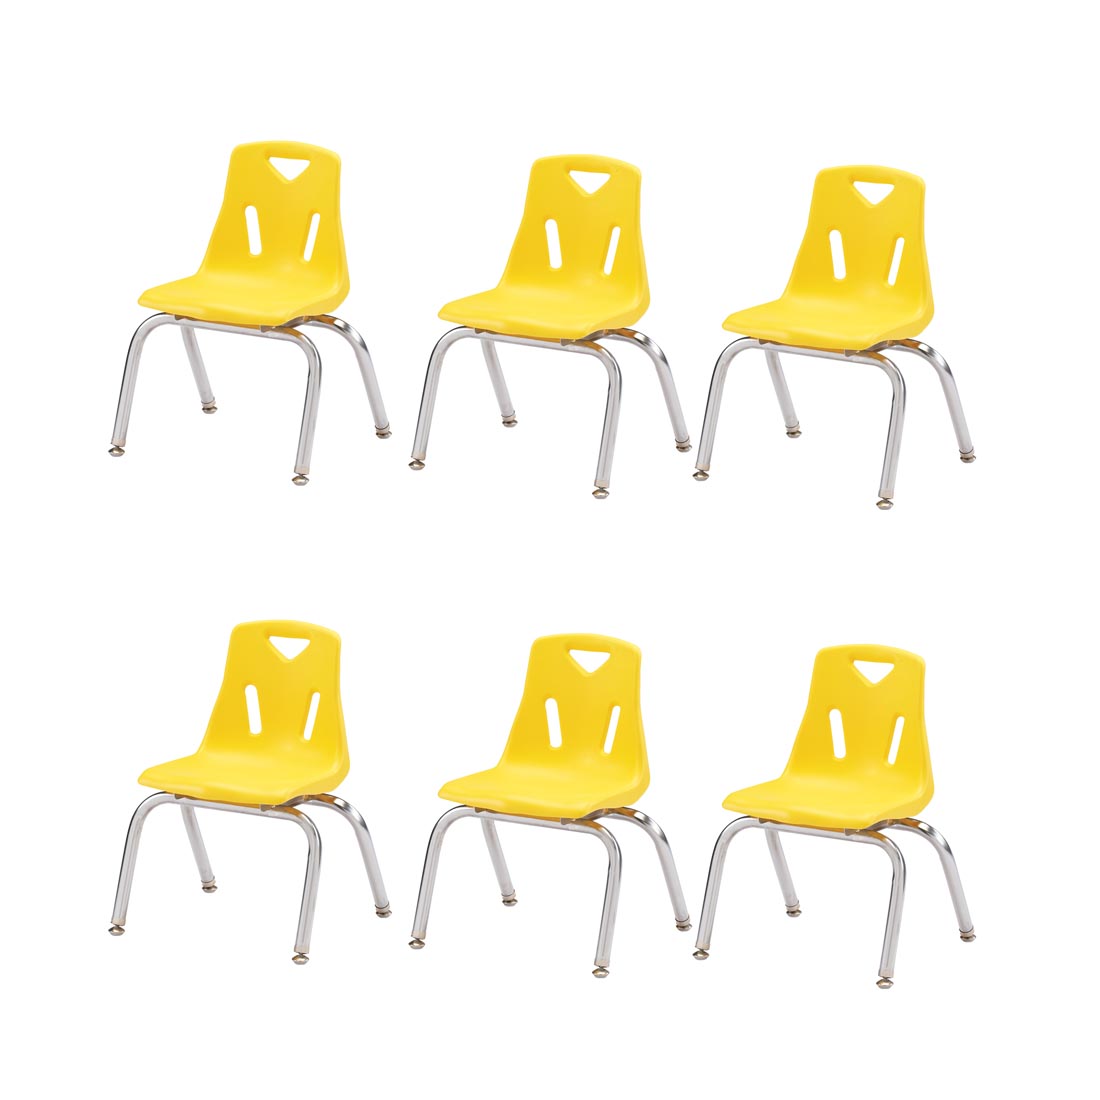 Six Yellow Berries Plastic Chairs